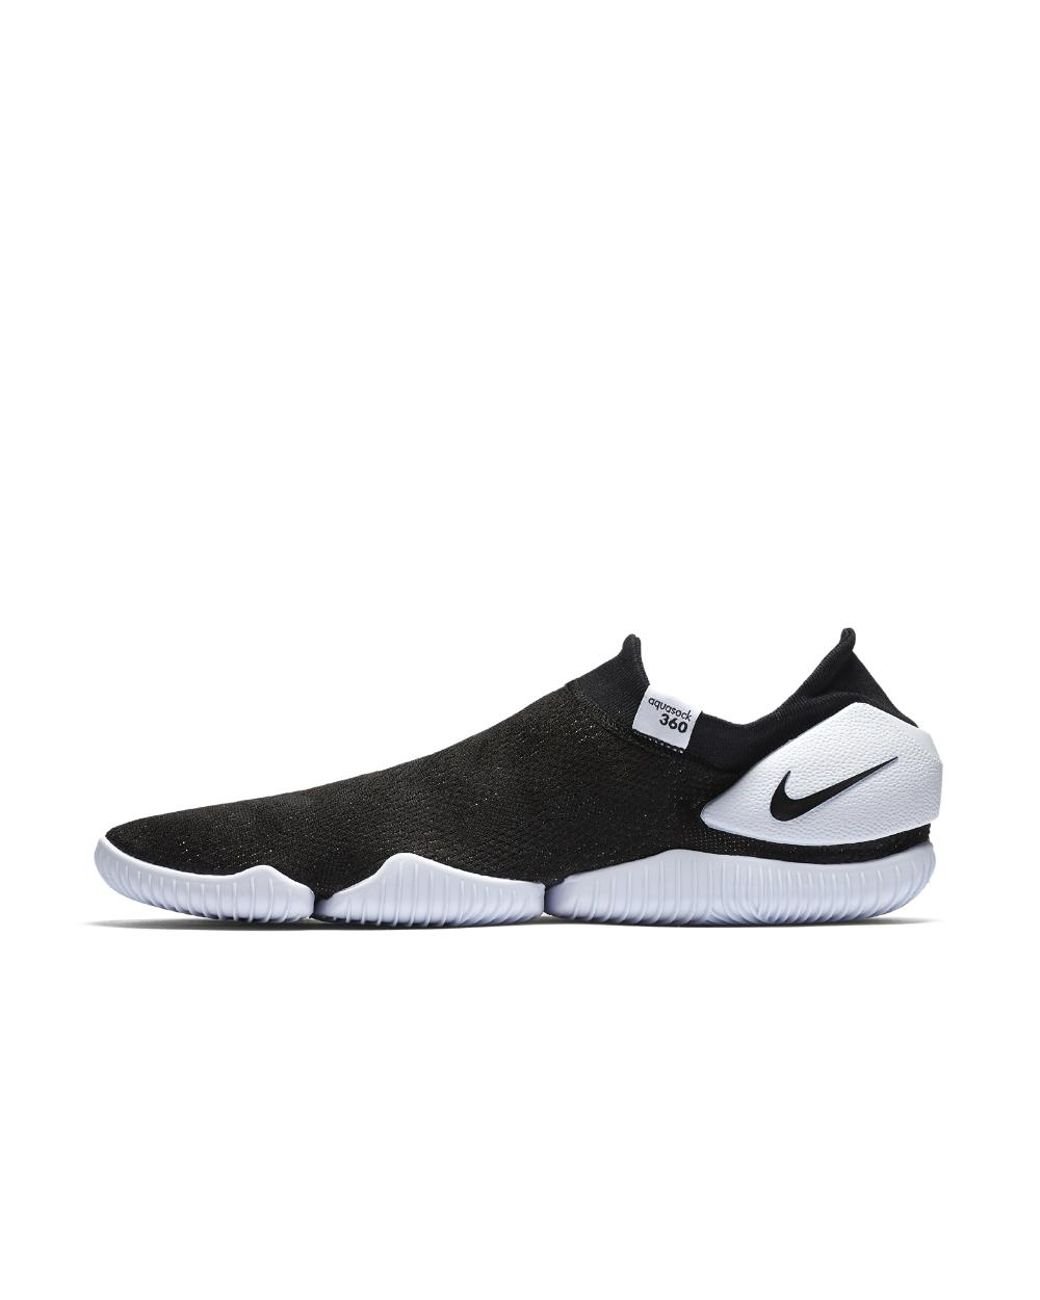 Nike Rubber Aqua Sock 360 Men's Shoe in Black/White/White/Black (Black) for  Men | Lyst